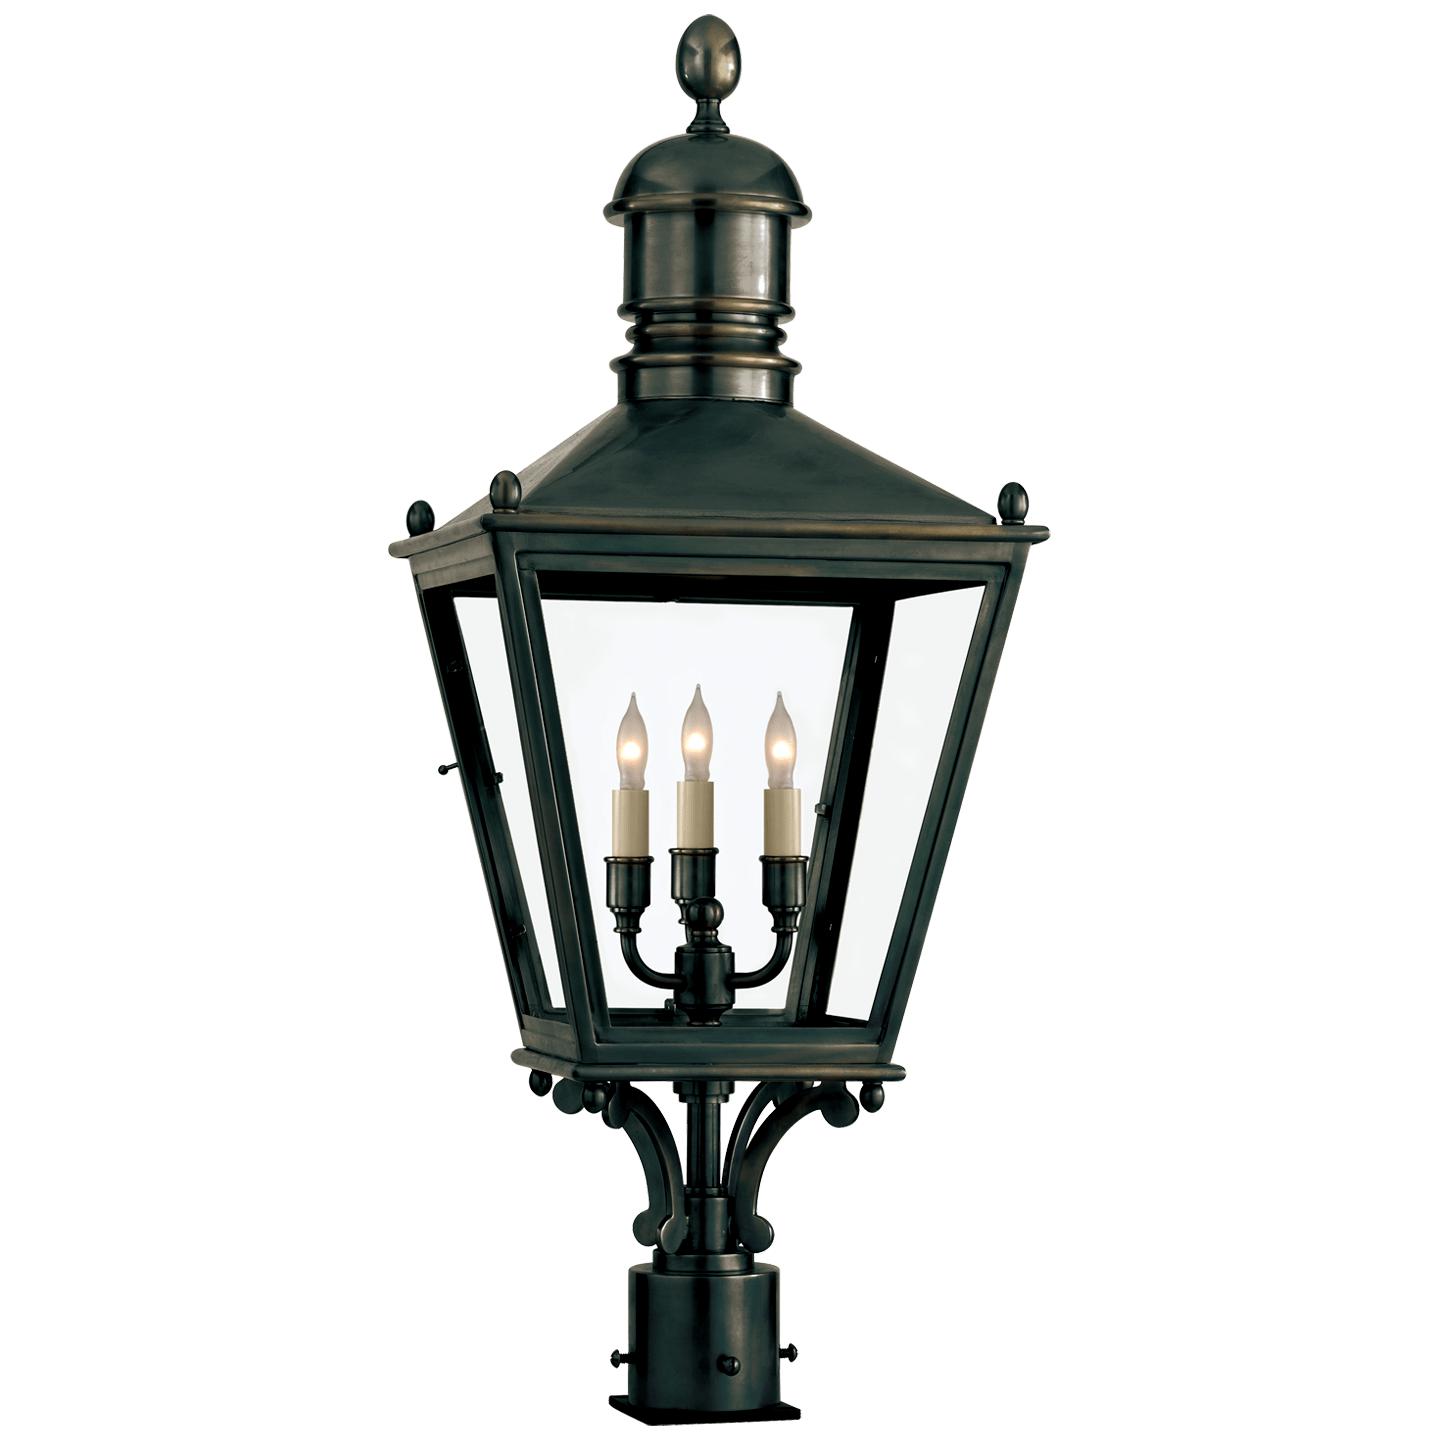 Купить Уличный фонарь Sussex Medium Post Lantern в интернет-магазине roooms.ru